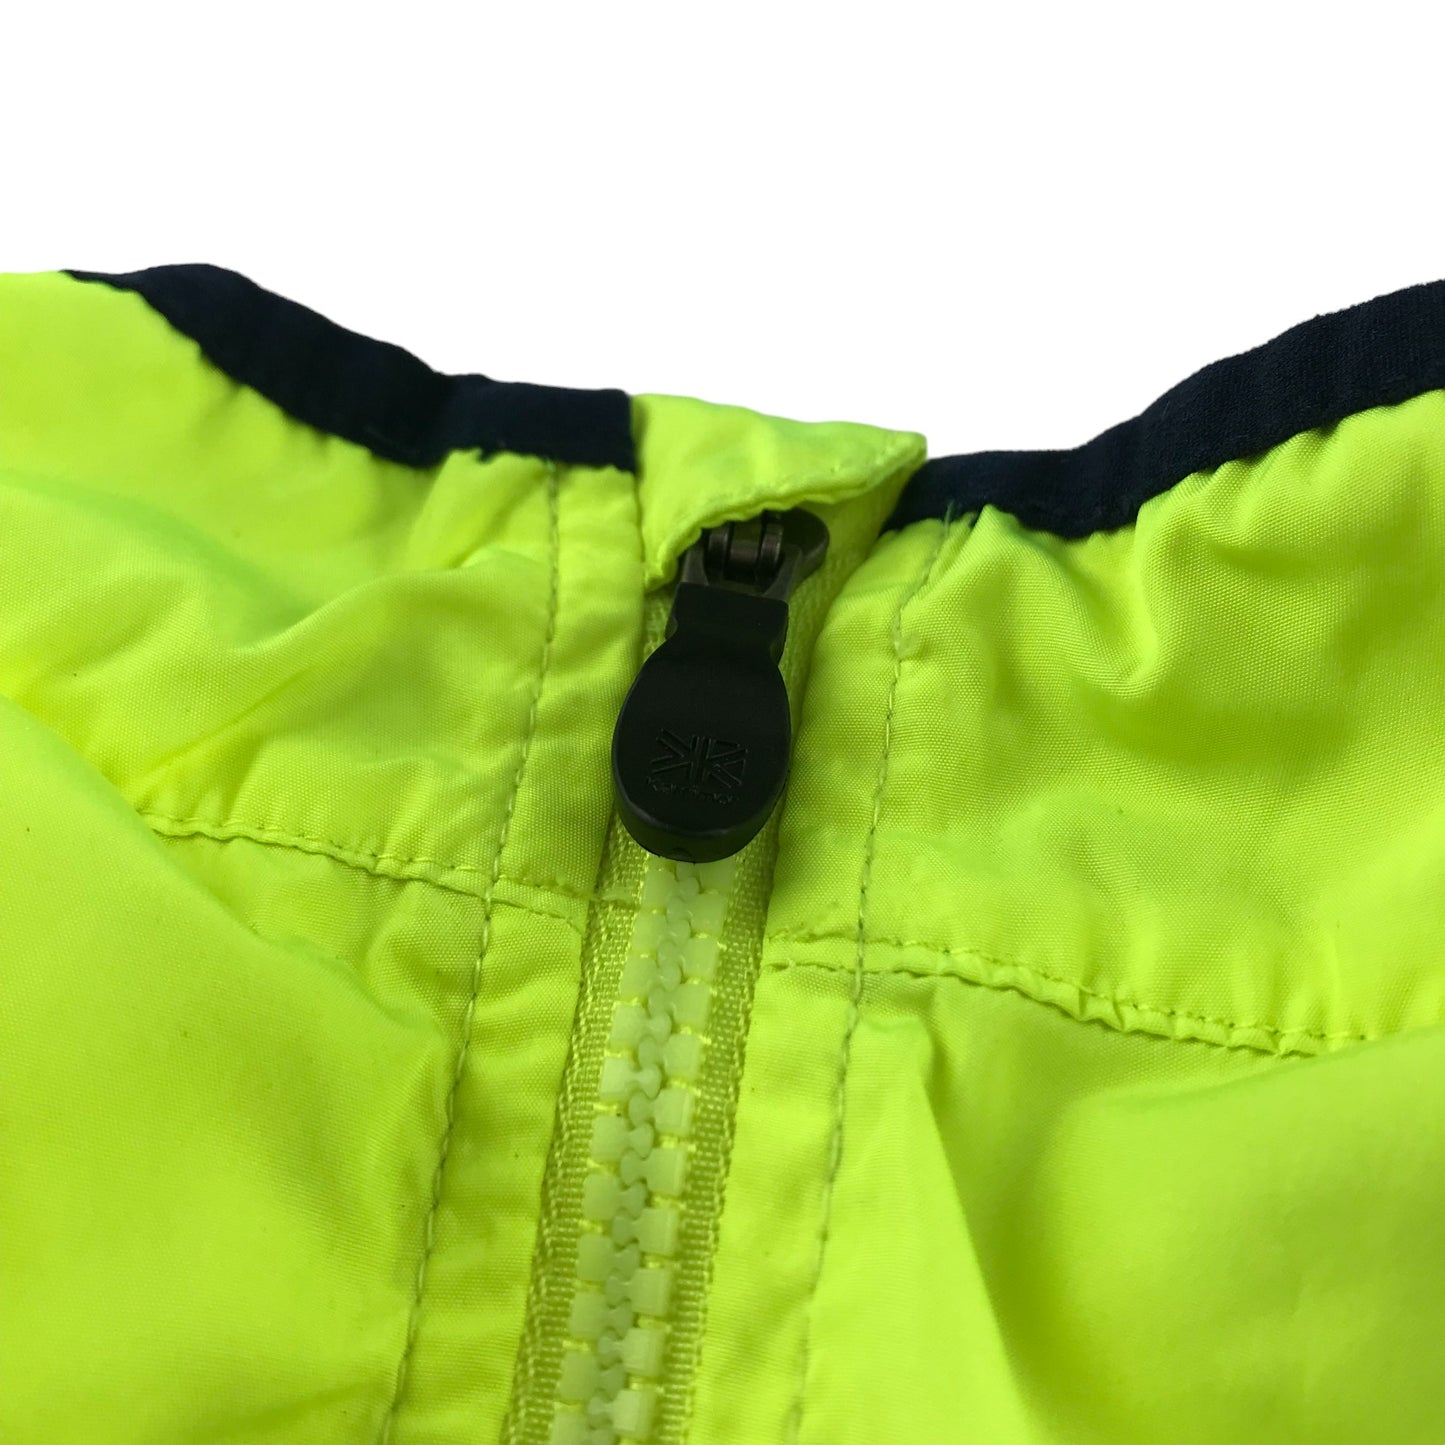 Karrimor light jacket 9-10 years neon yellow cycling jacket